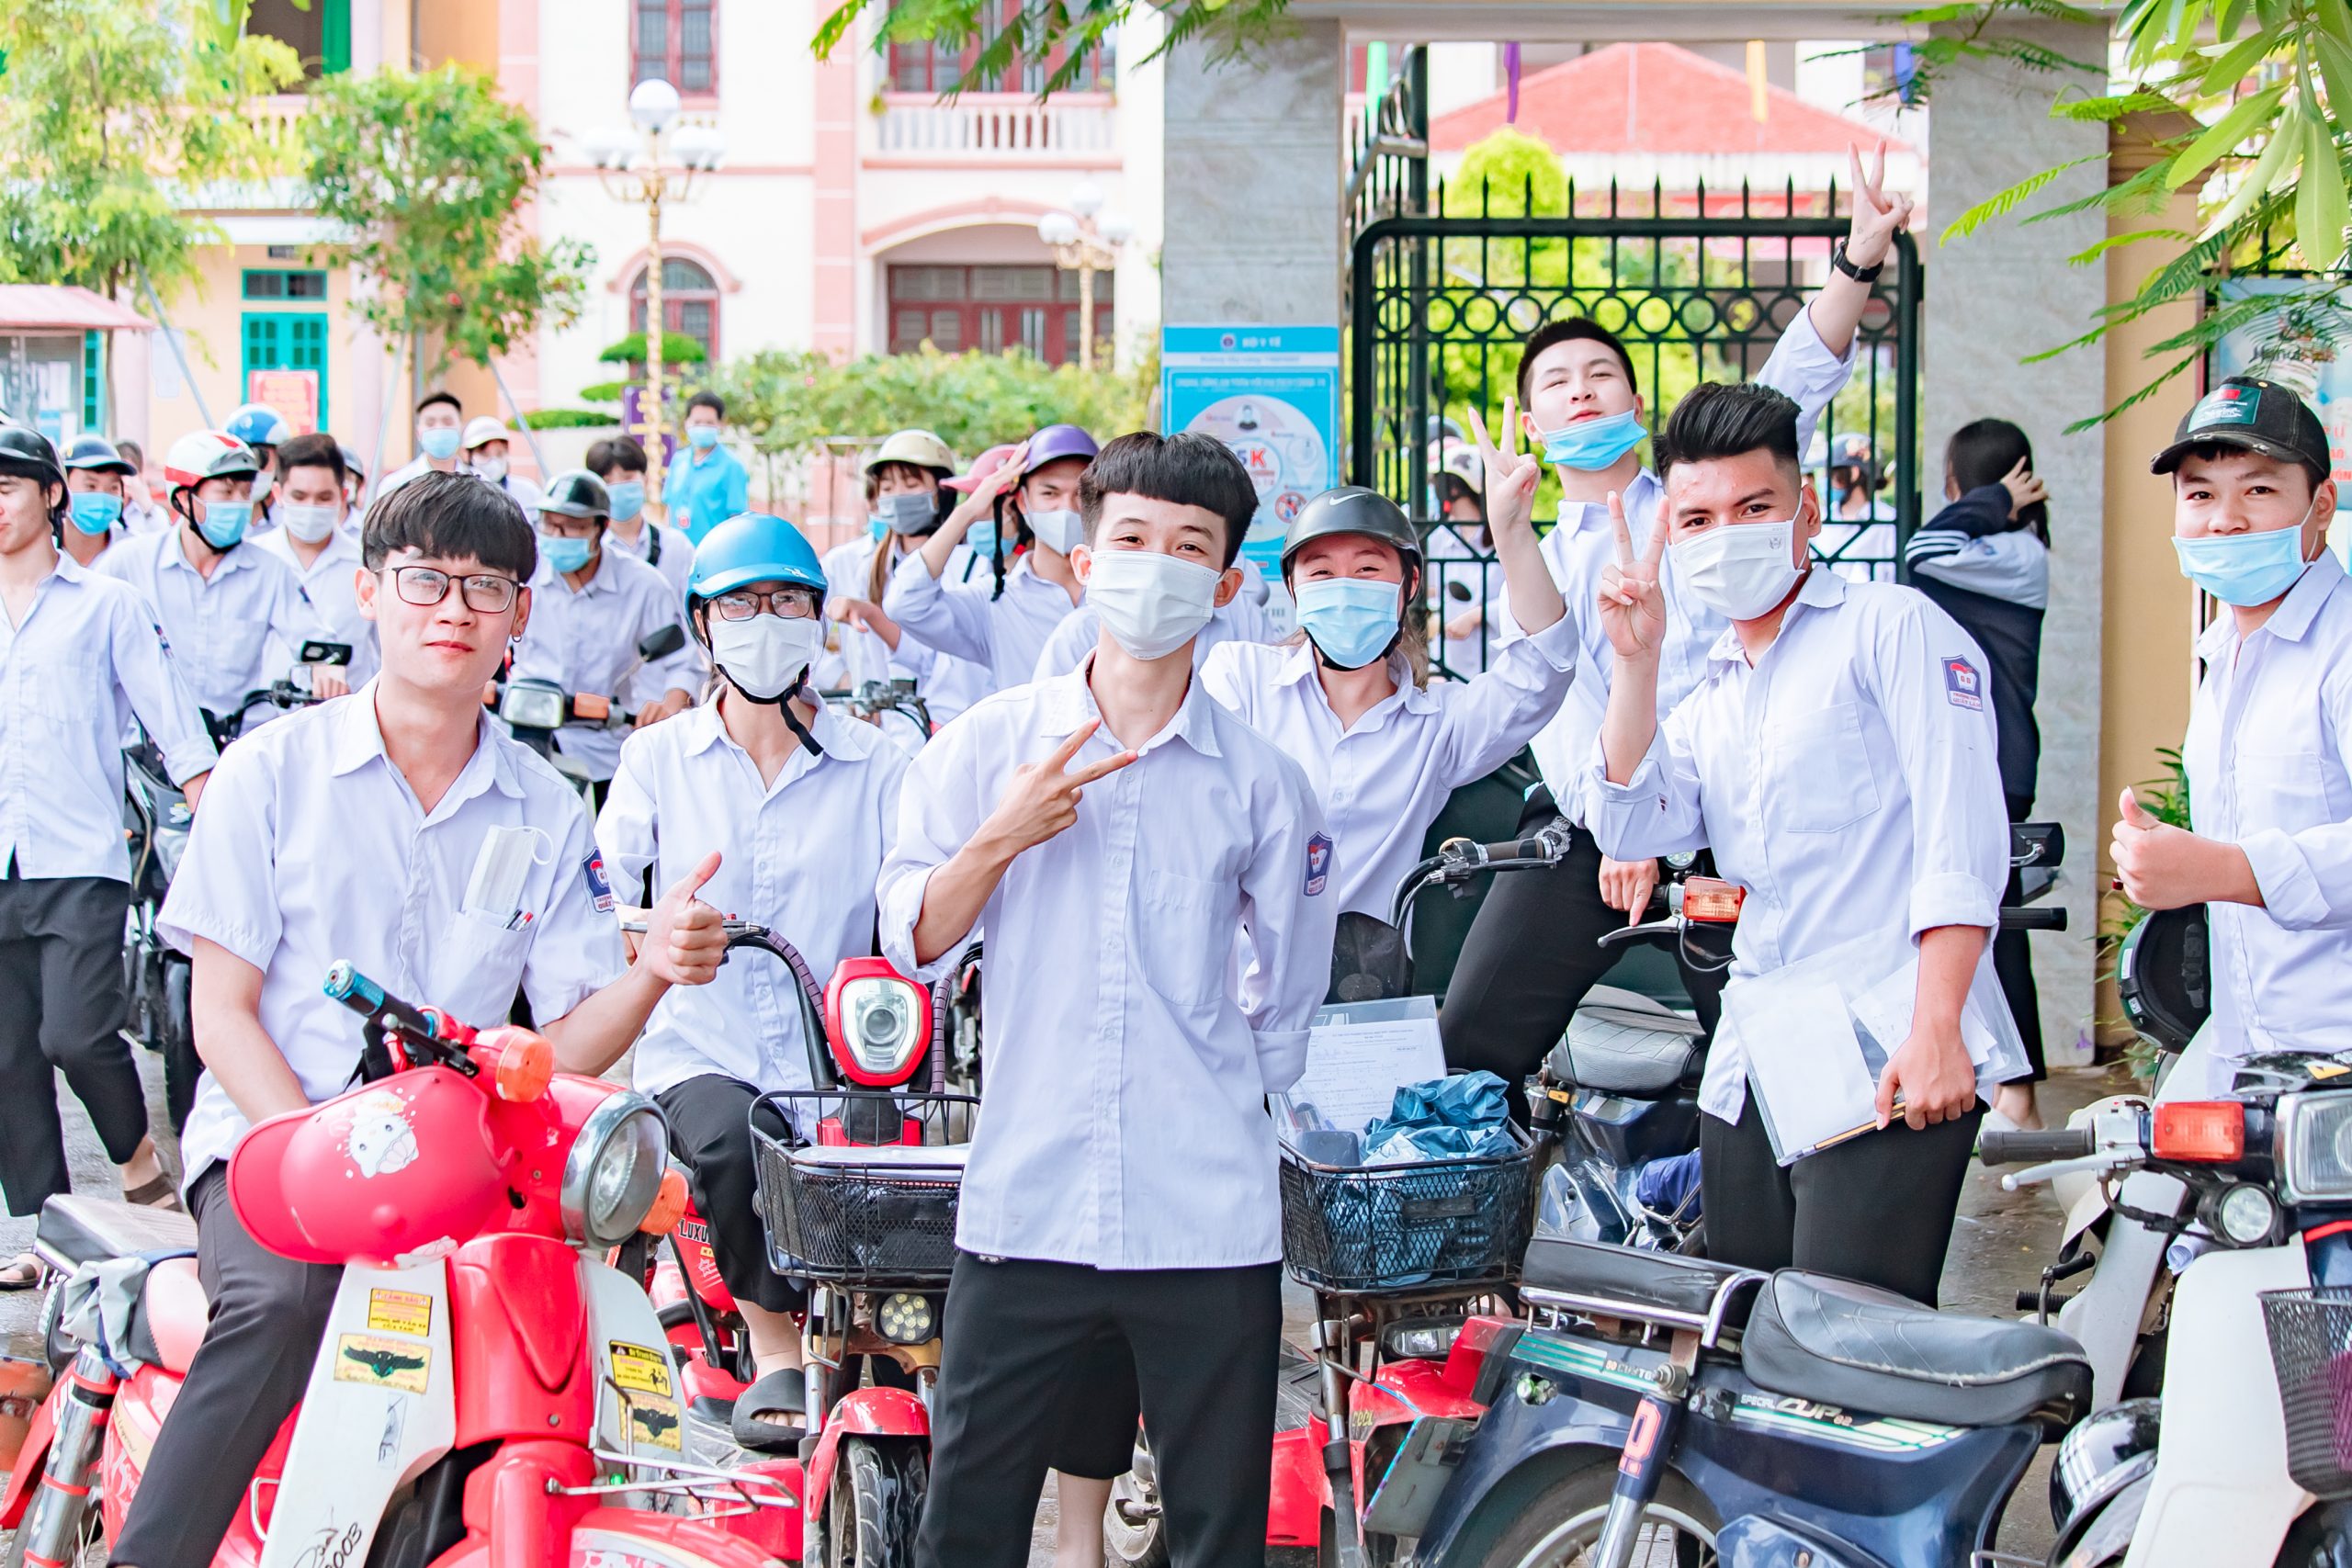 Nam Định: Đề thi dễ, thí sinh thở phào kết thúc kỳ thi